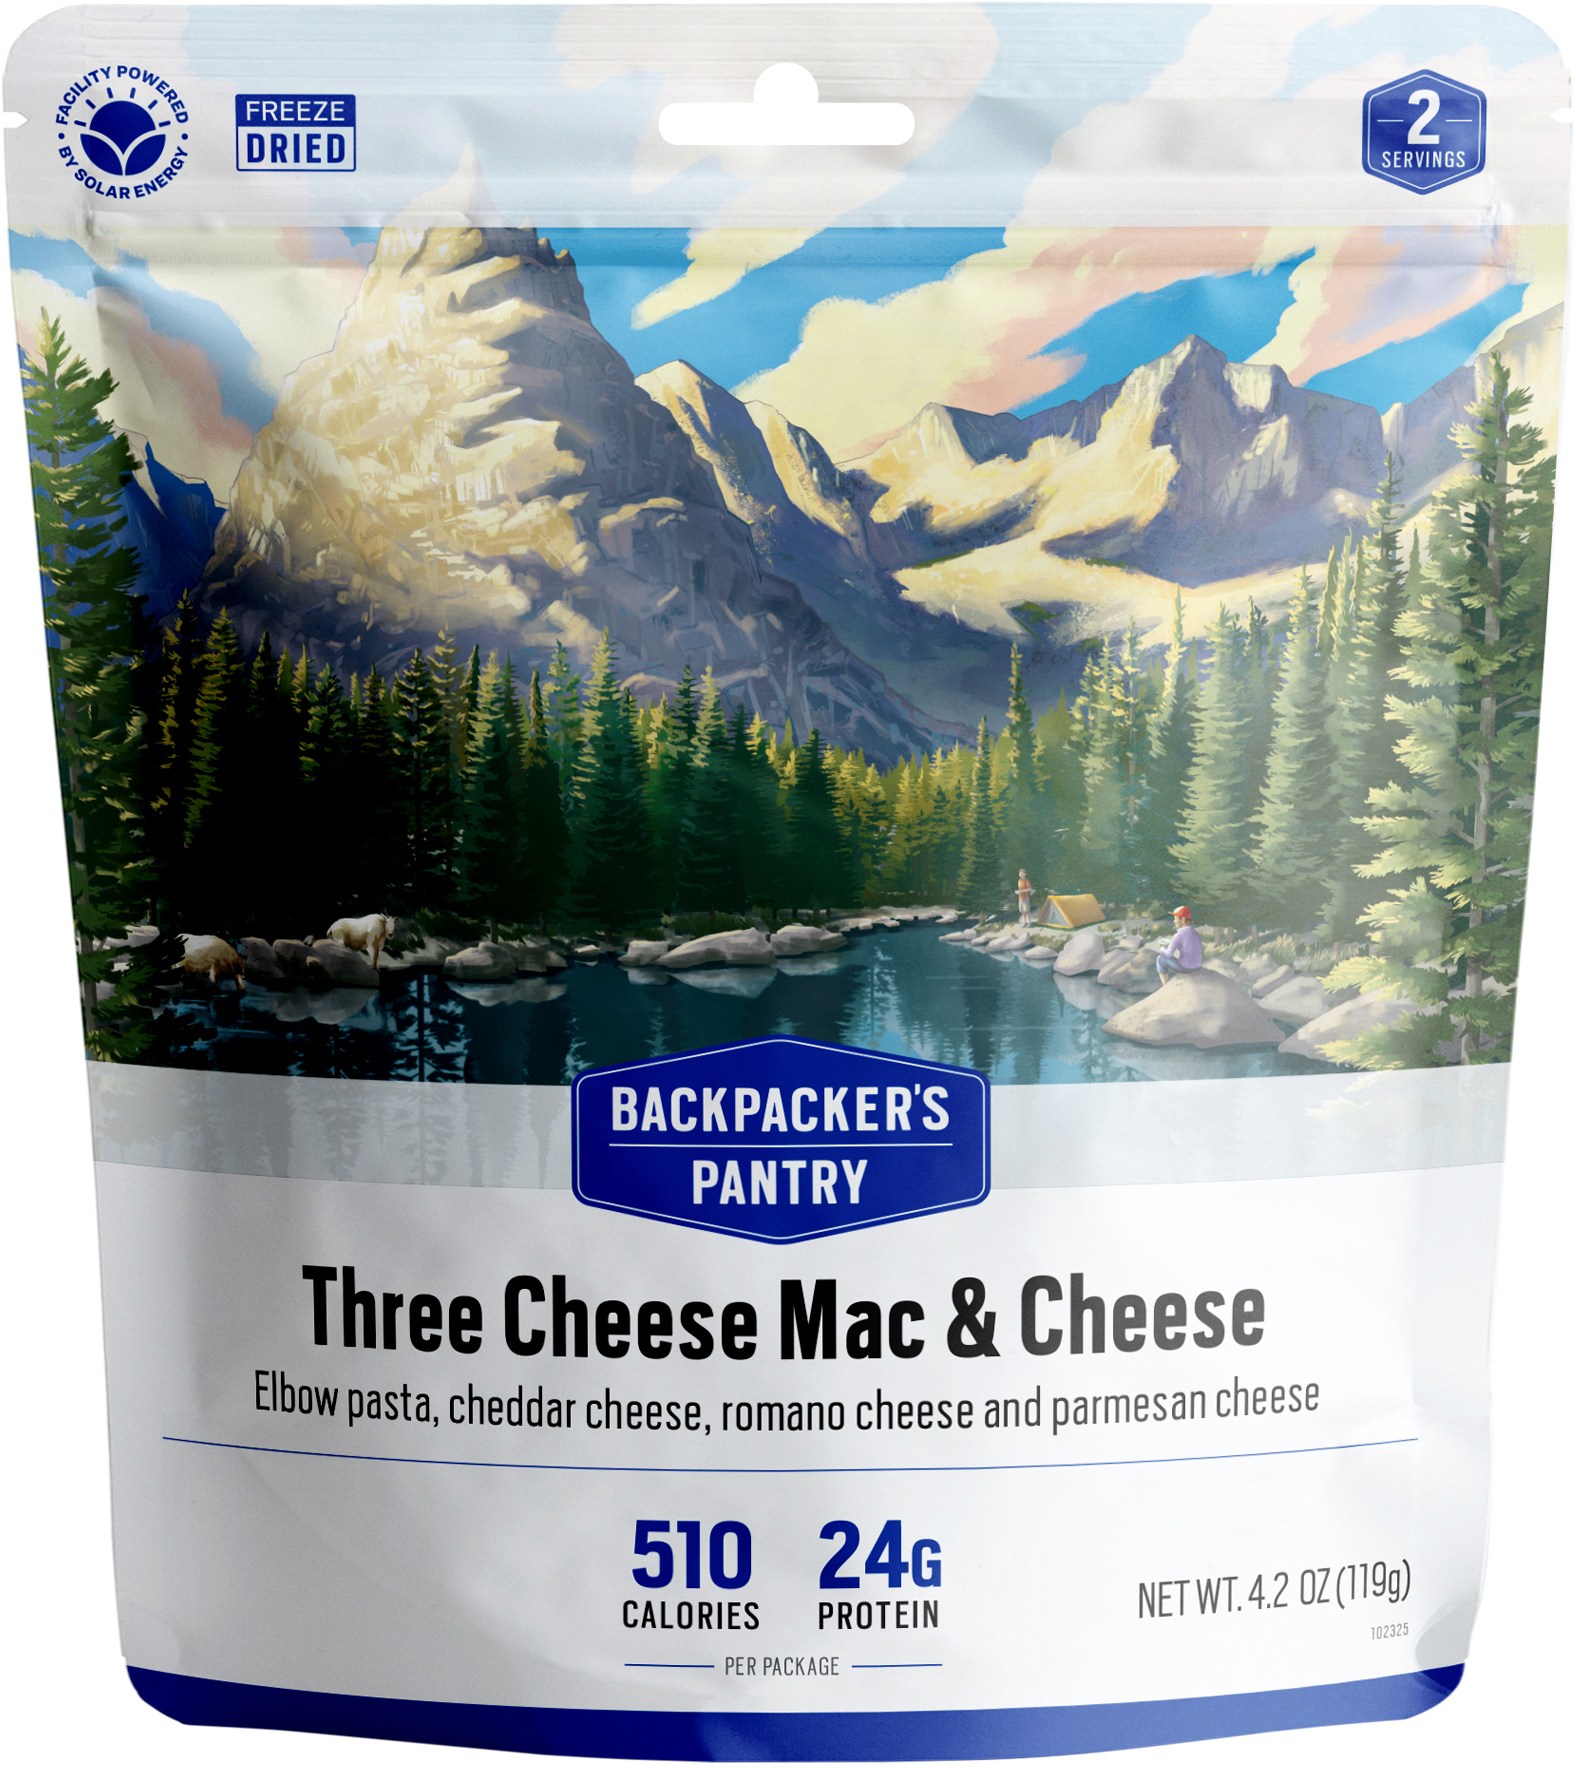 Макароны с тремя сырами и сыром — 2 порции Backpacker's Pantry